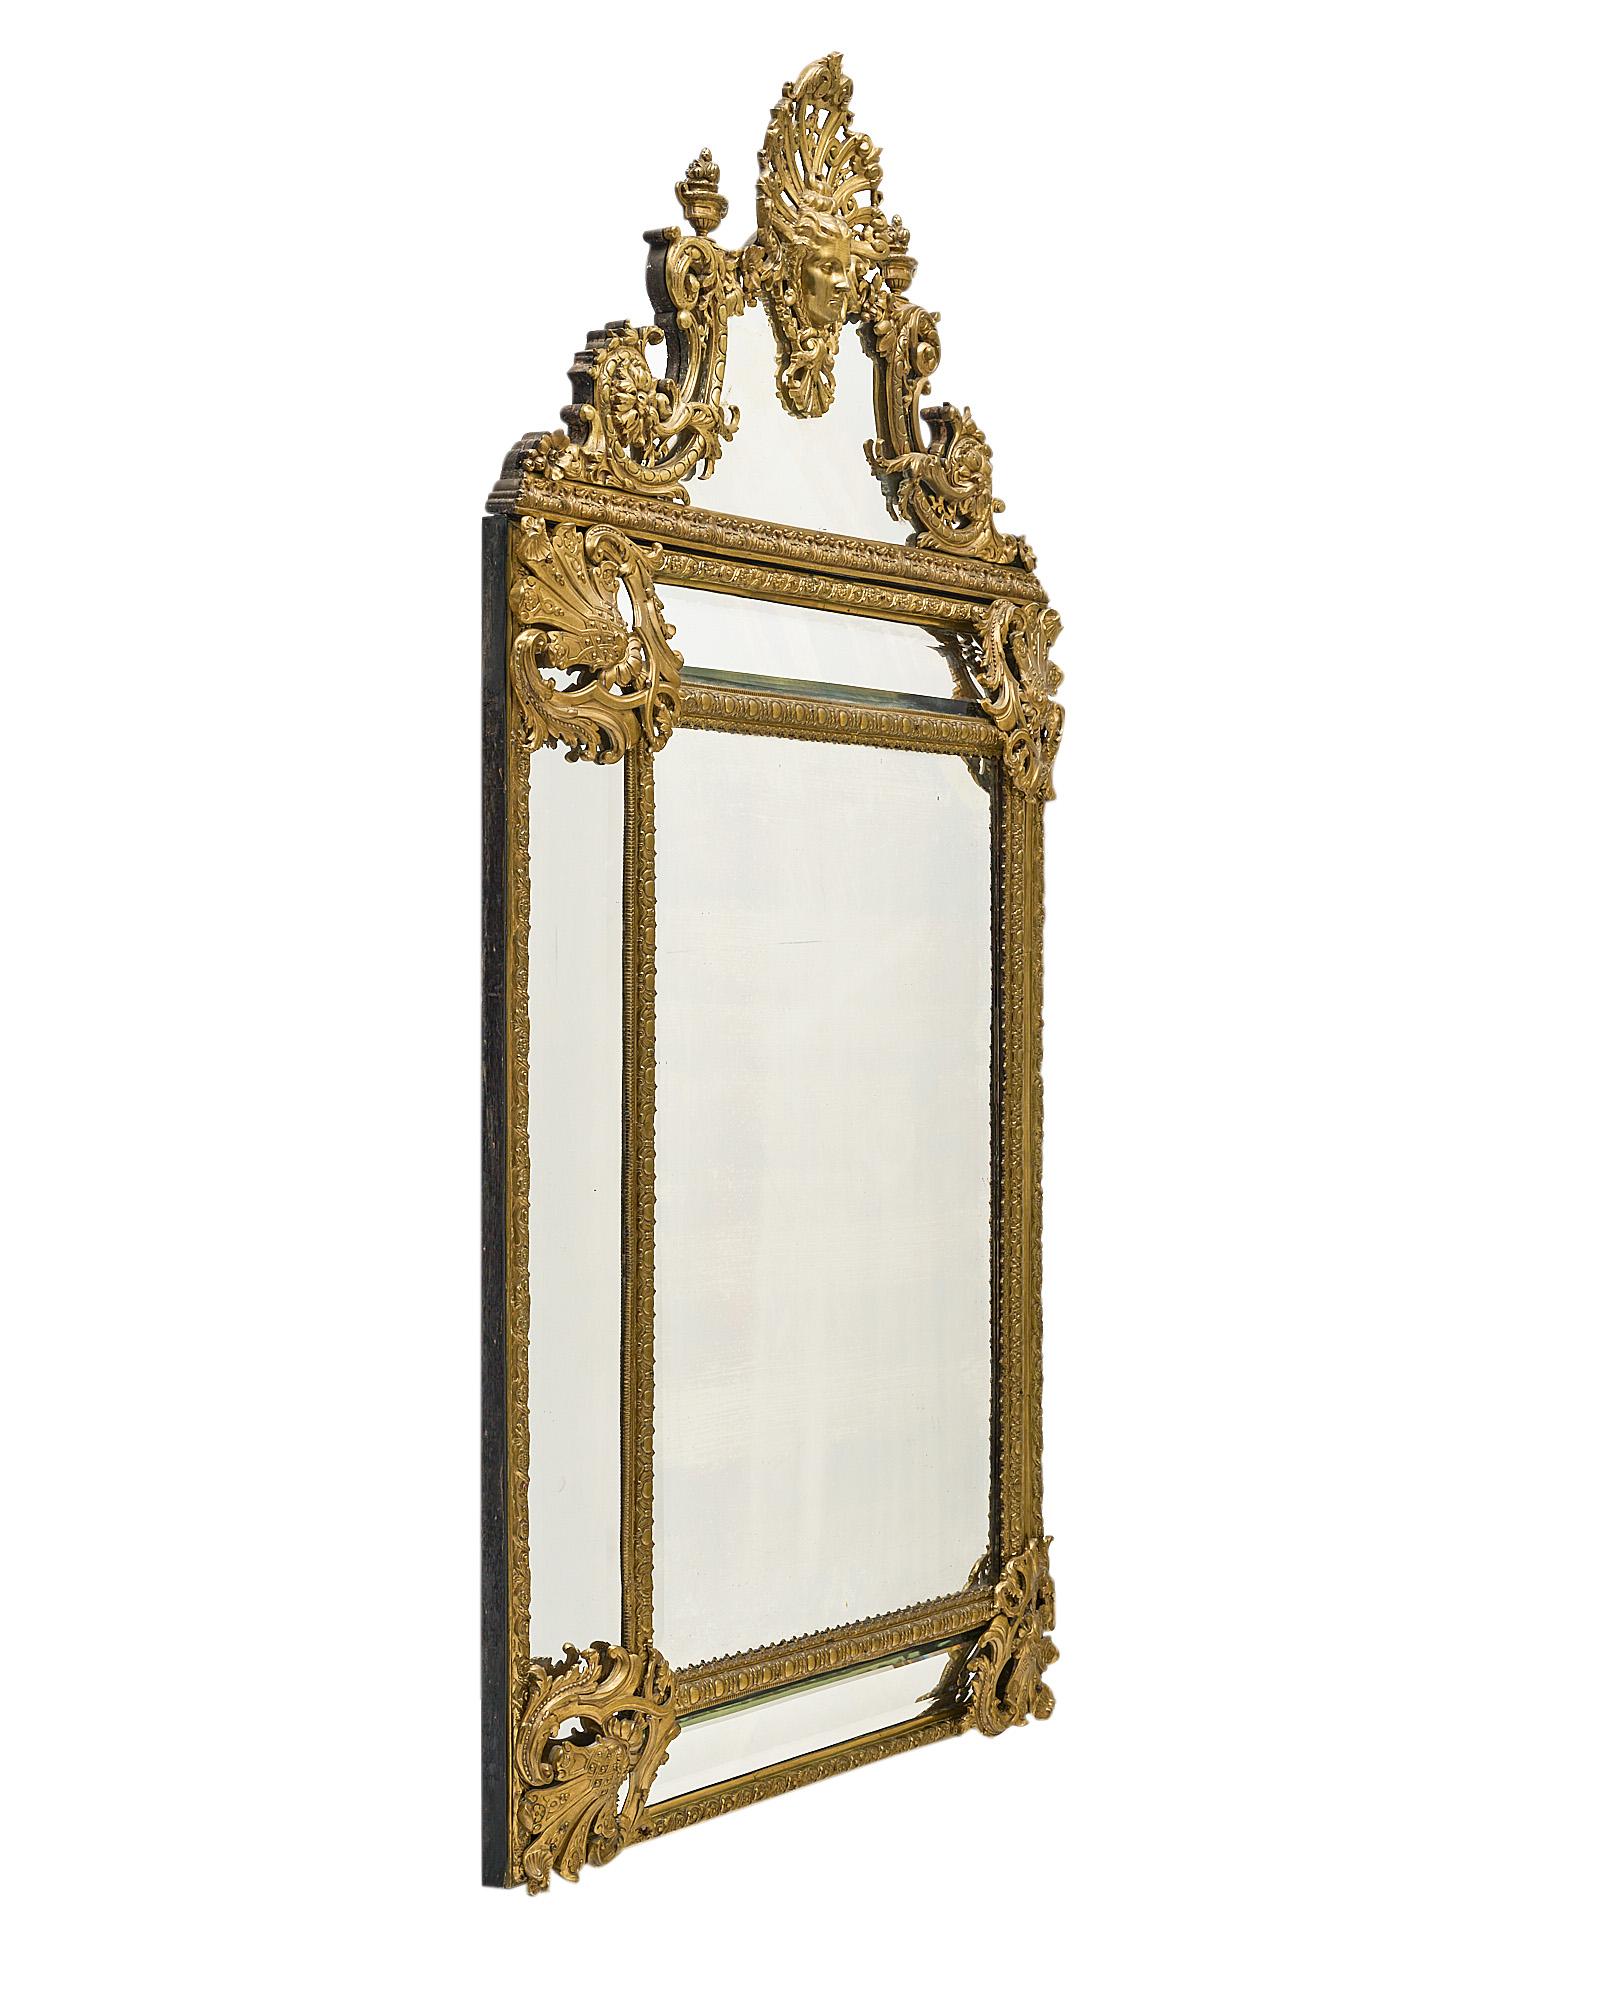 Spiegel, französisch, aus der Zeit Napoleons III. Dieses Stück ist aus fein gegossenem Bronze-Ormolu gefertigt und mit einem aufwendigen Dekor aus Friesen, Godrons